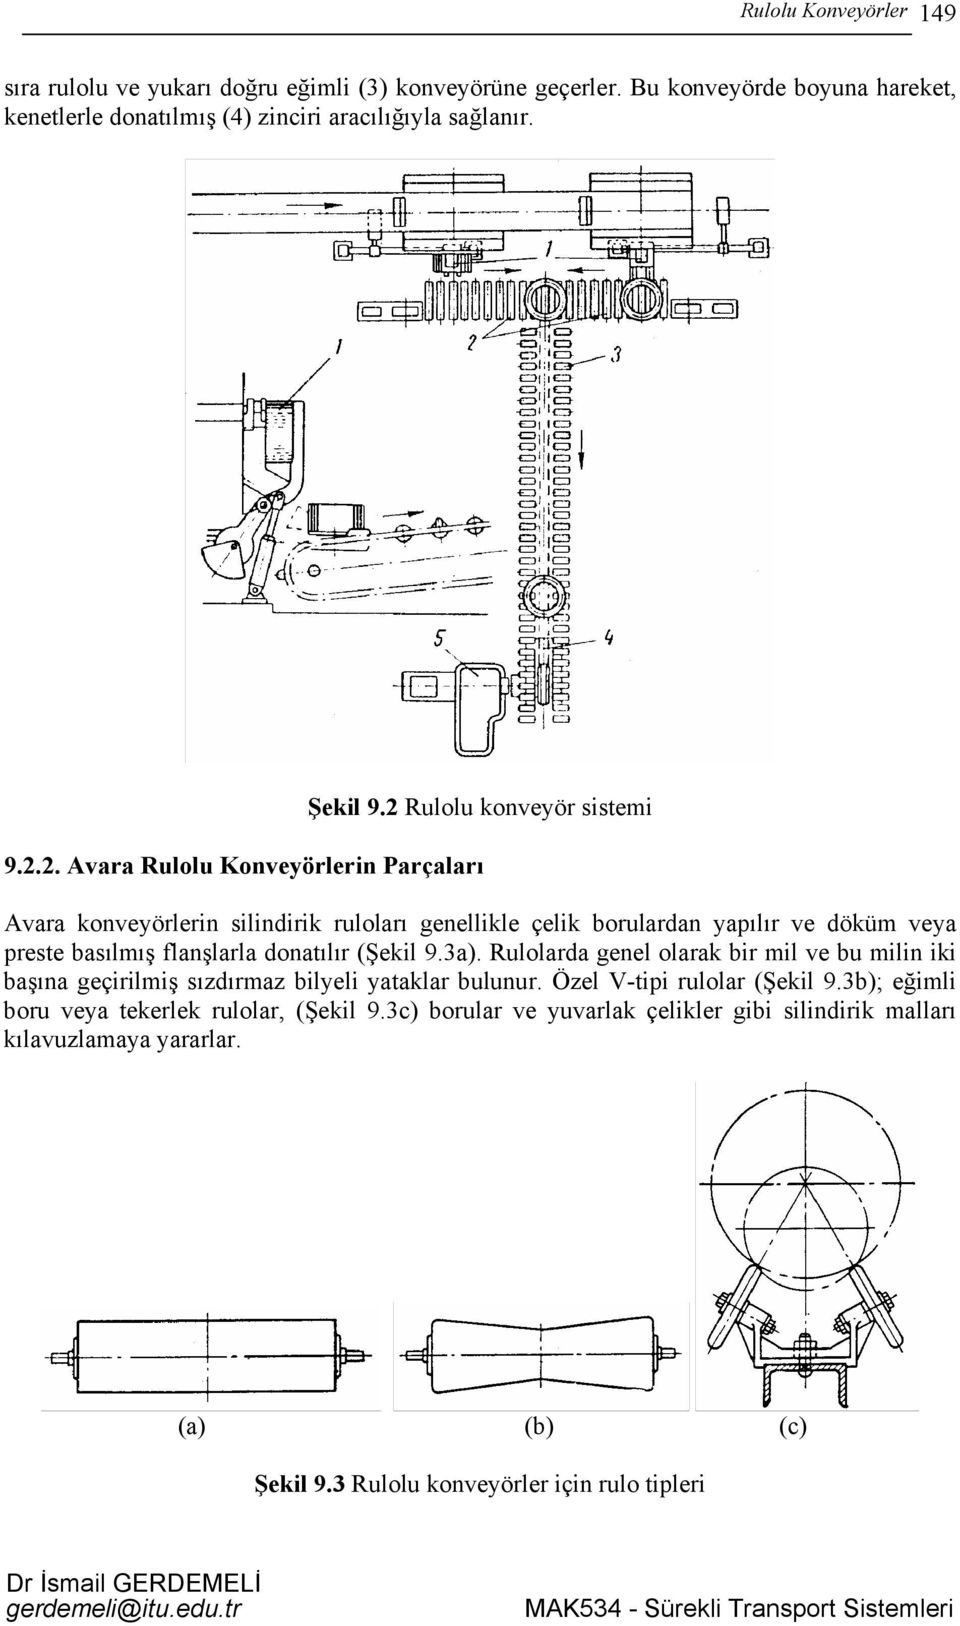 .. Avara Rulolu Konveyörlerin Parçaları Avara konveyörlerin silindirik ruloları genellikle çelik borulardan yapılır ve döküm veya preste basılmış flanşlarla donatılır (Şekil 9.